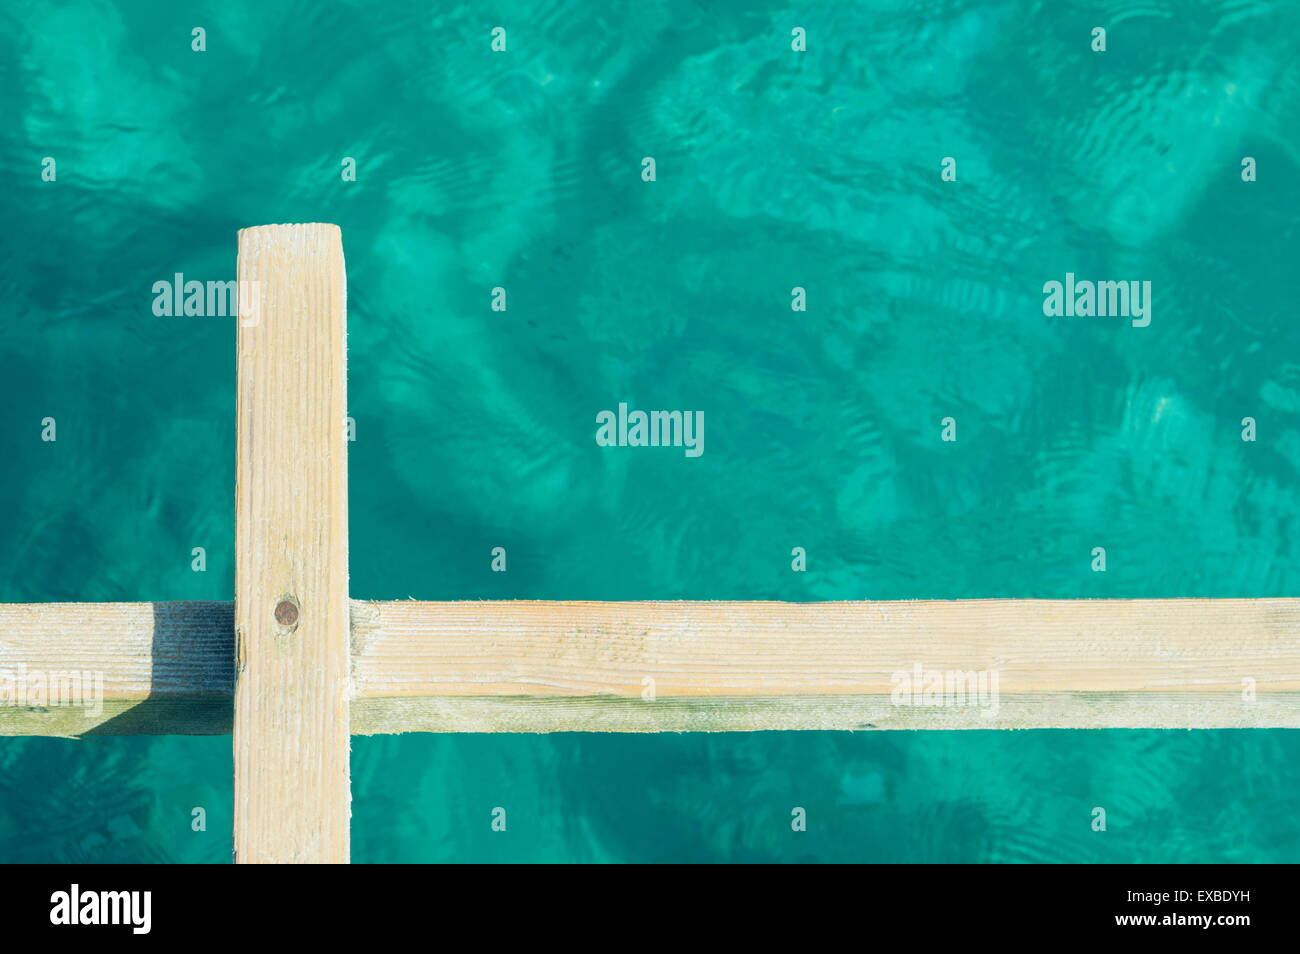 Résumé photo d'une planche en bois de l'eau de mer claire angainst Banque D'Images